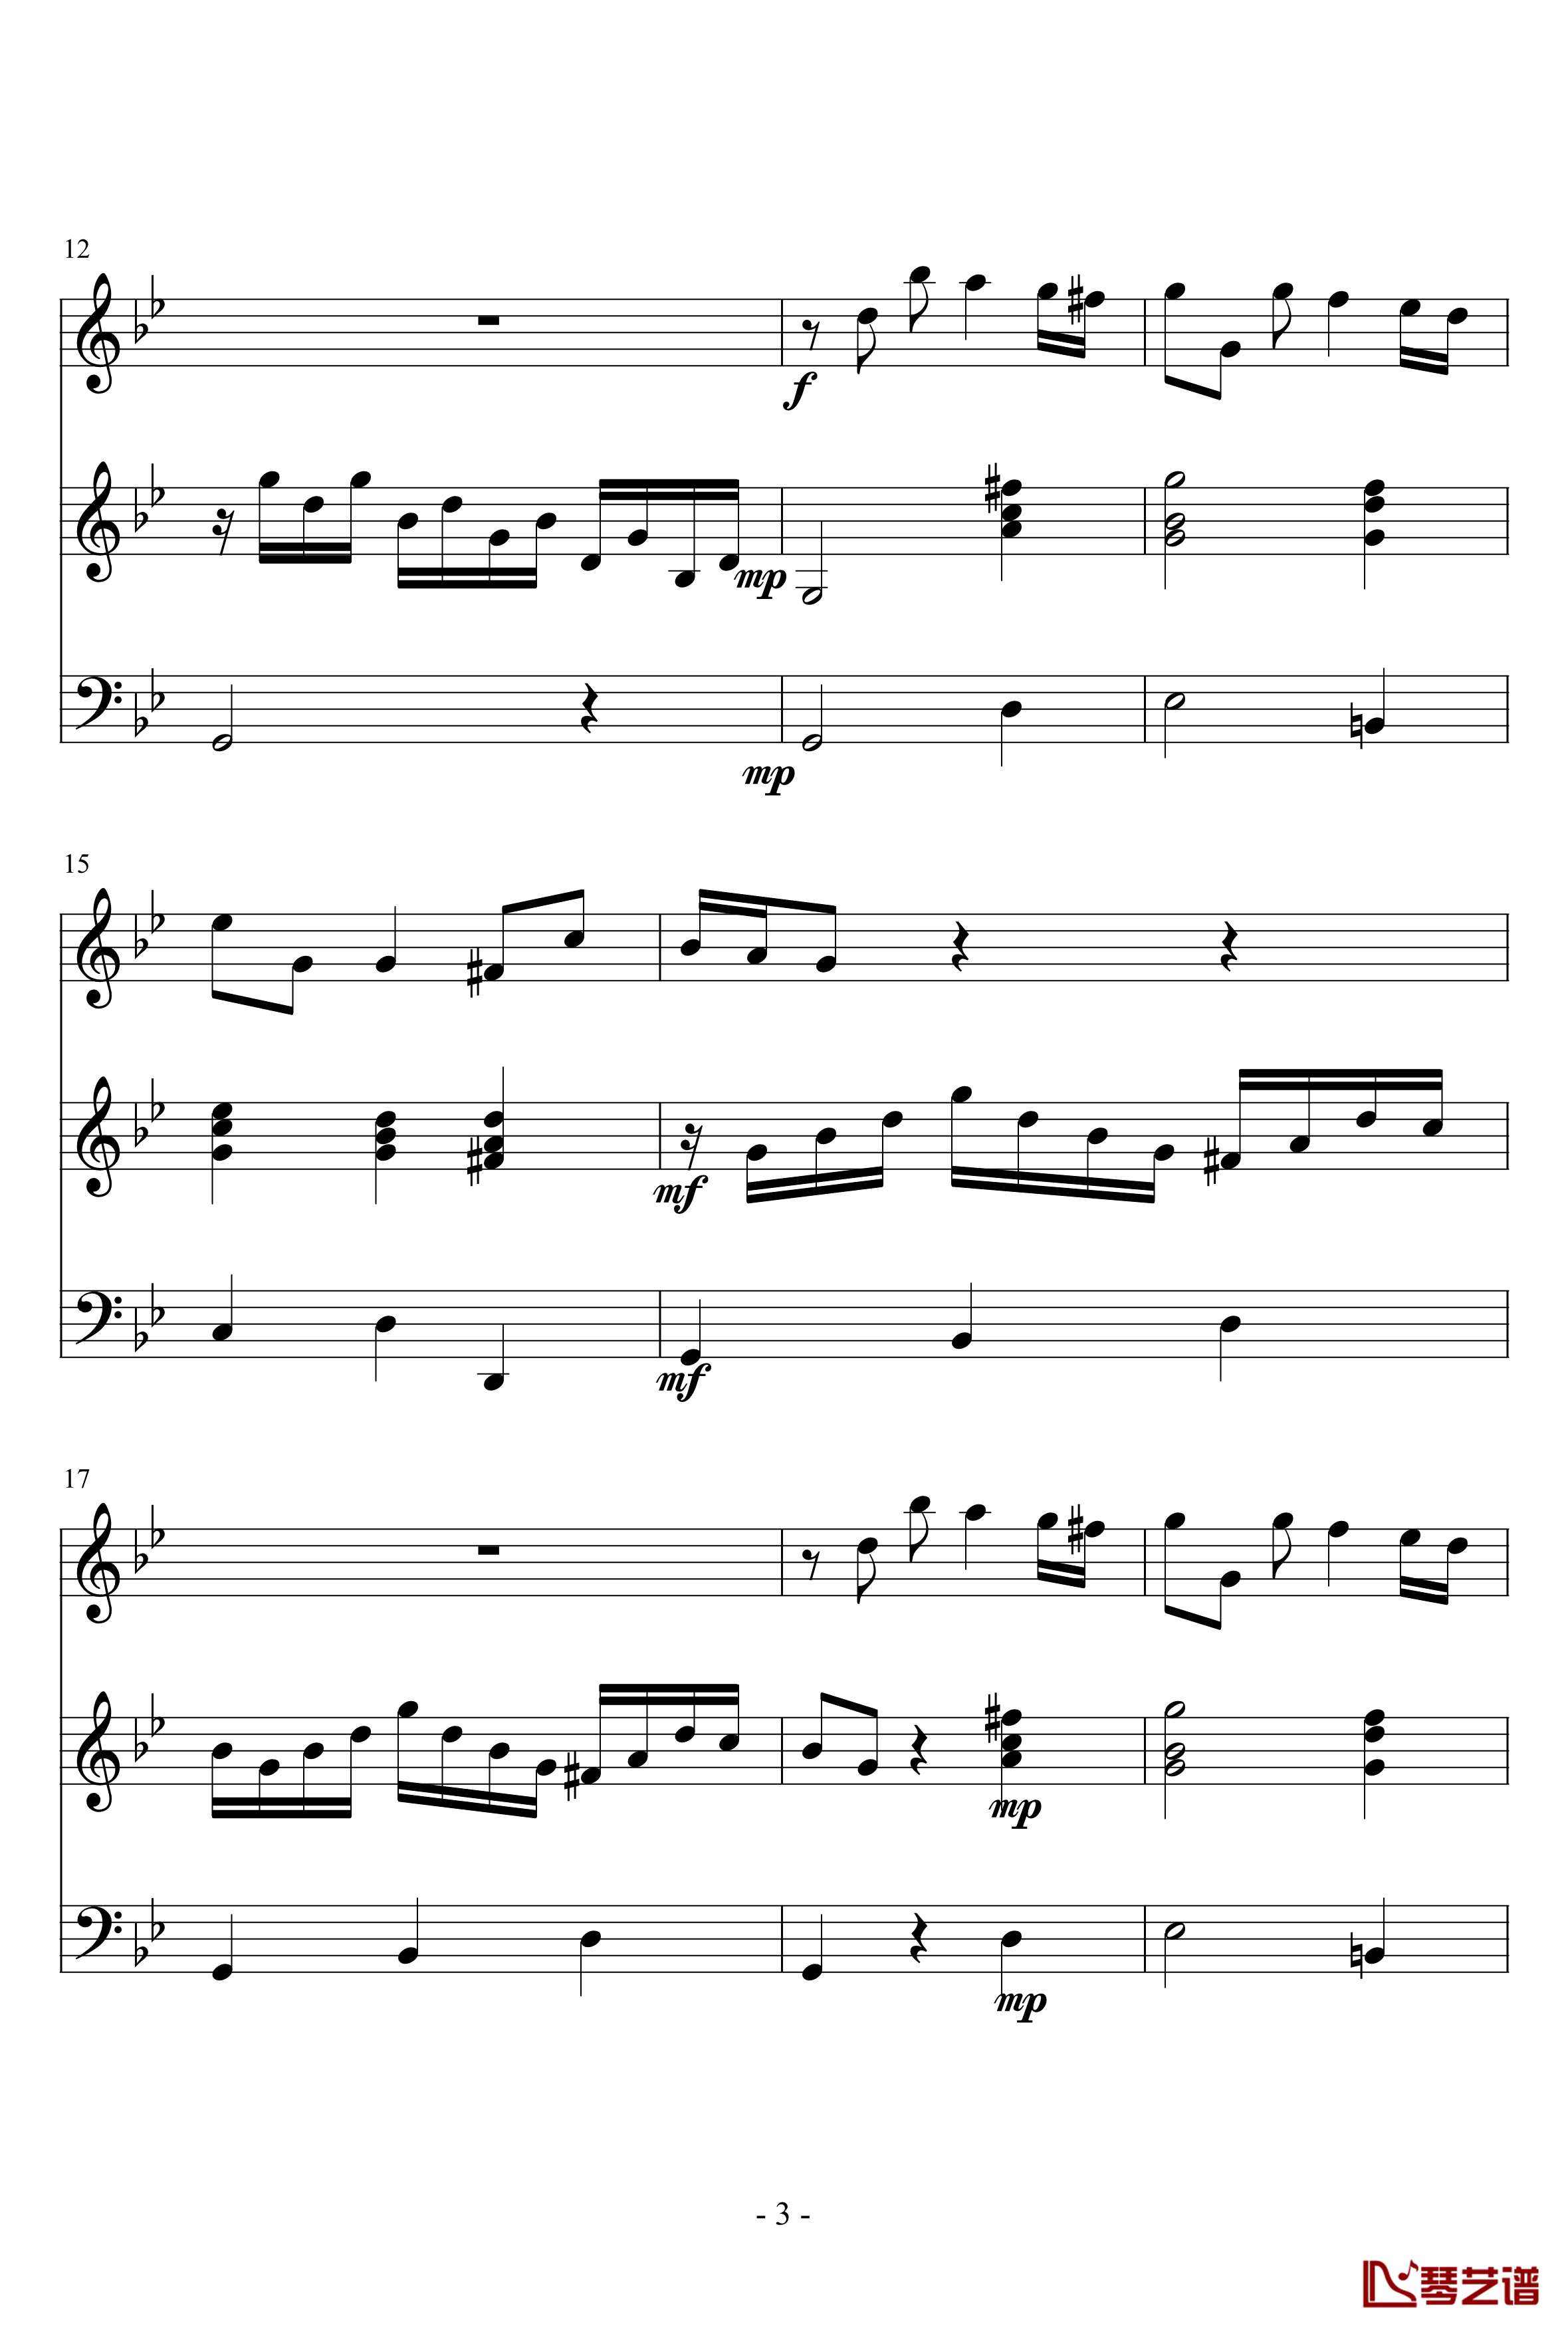 长笛与羽管键琴奏鸣曲第一乐章钢琴谱-巴赫-P.E.Bach3